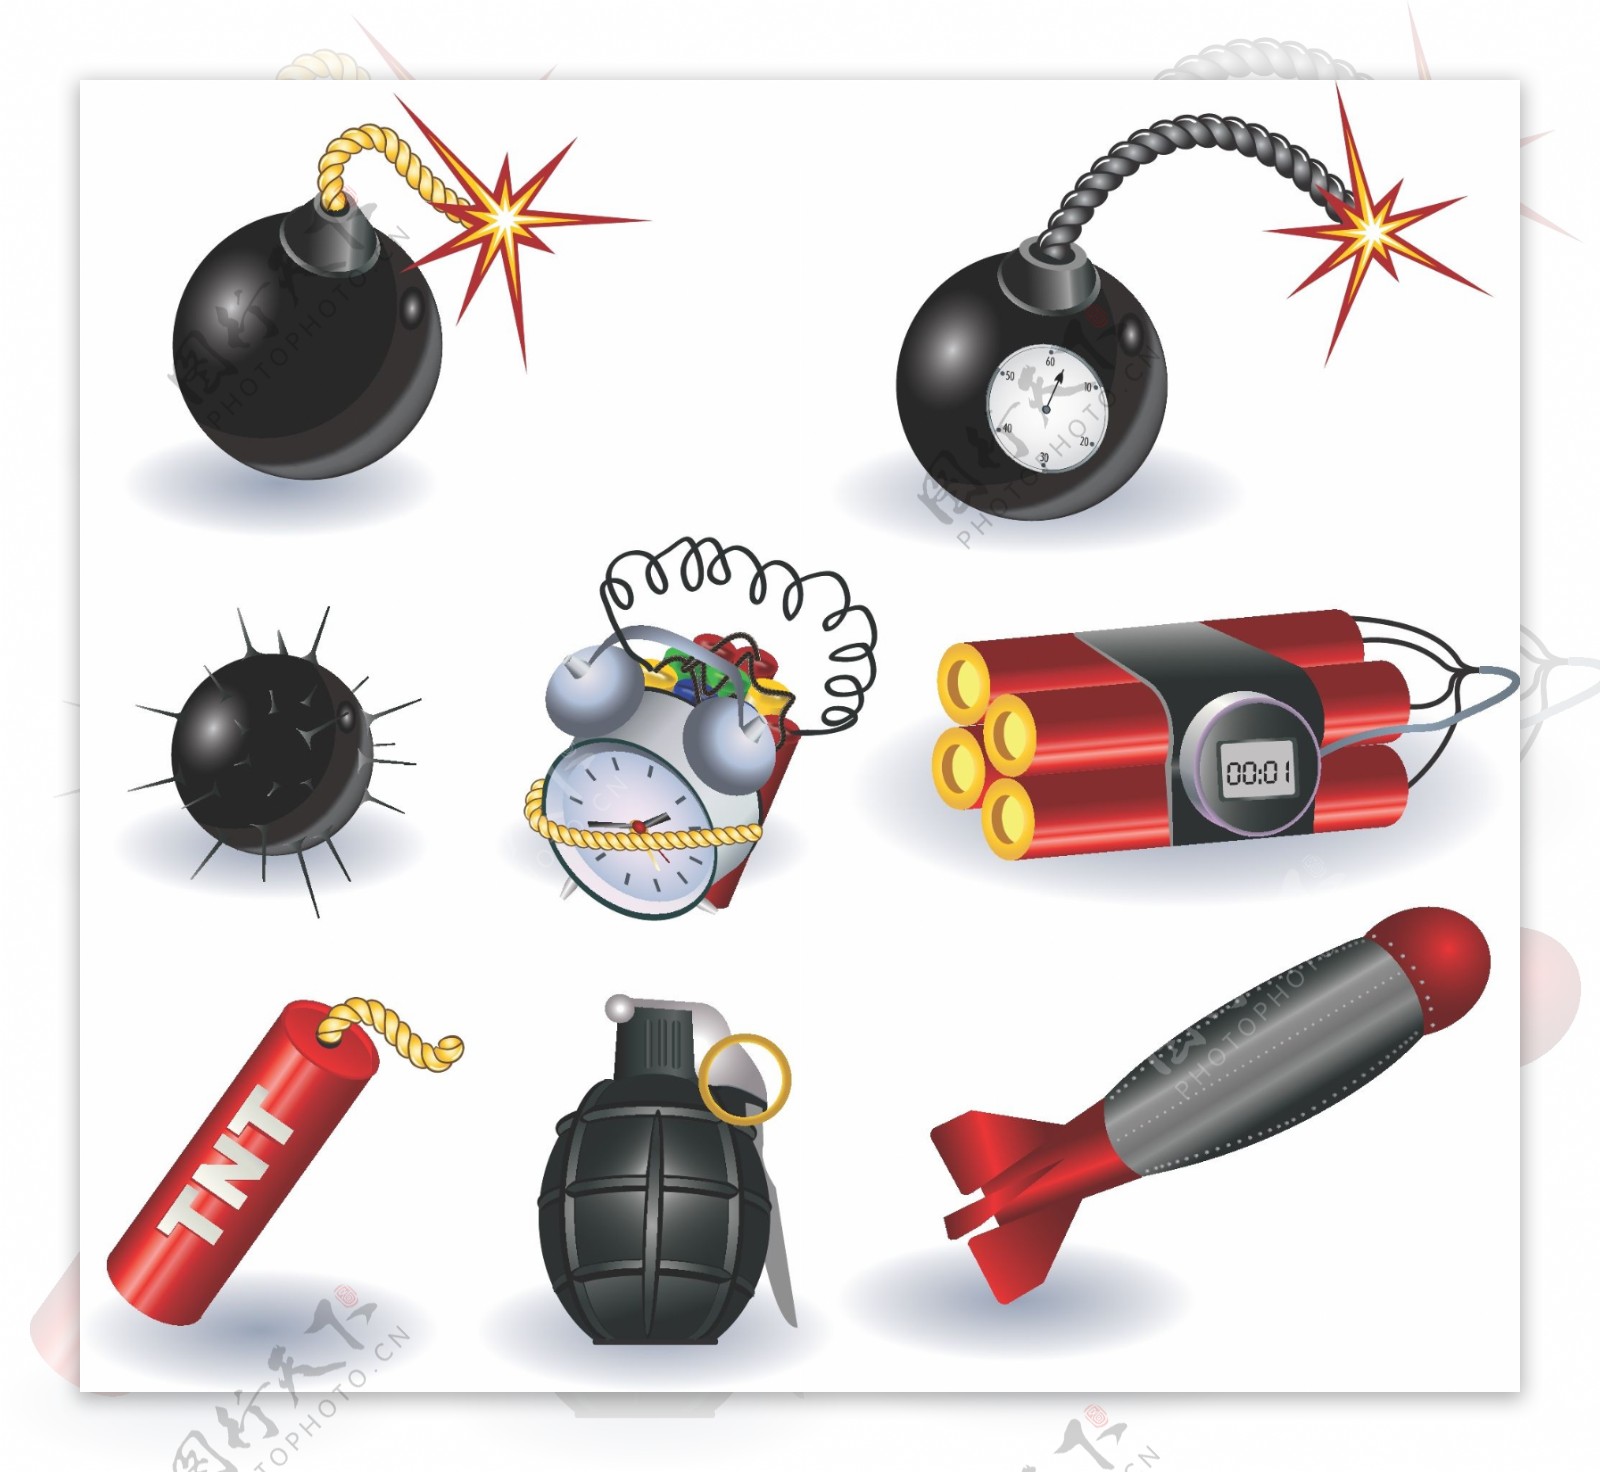 炸弹设备装置素材